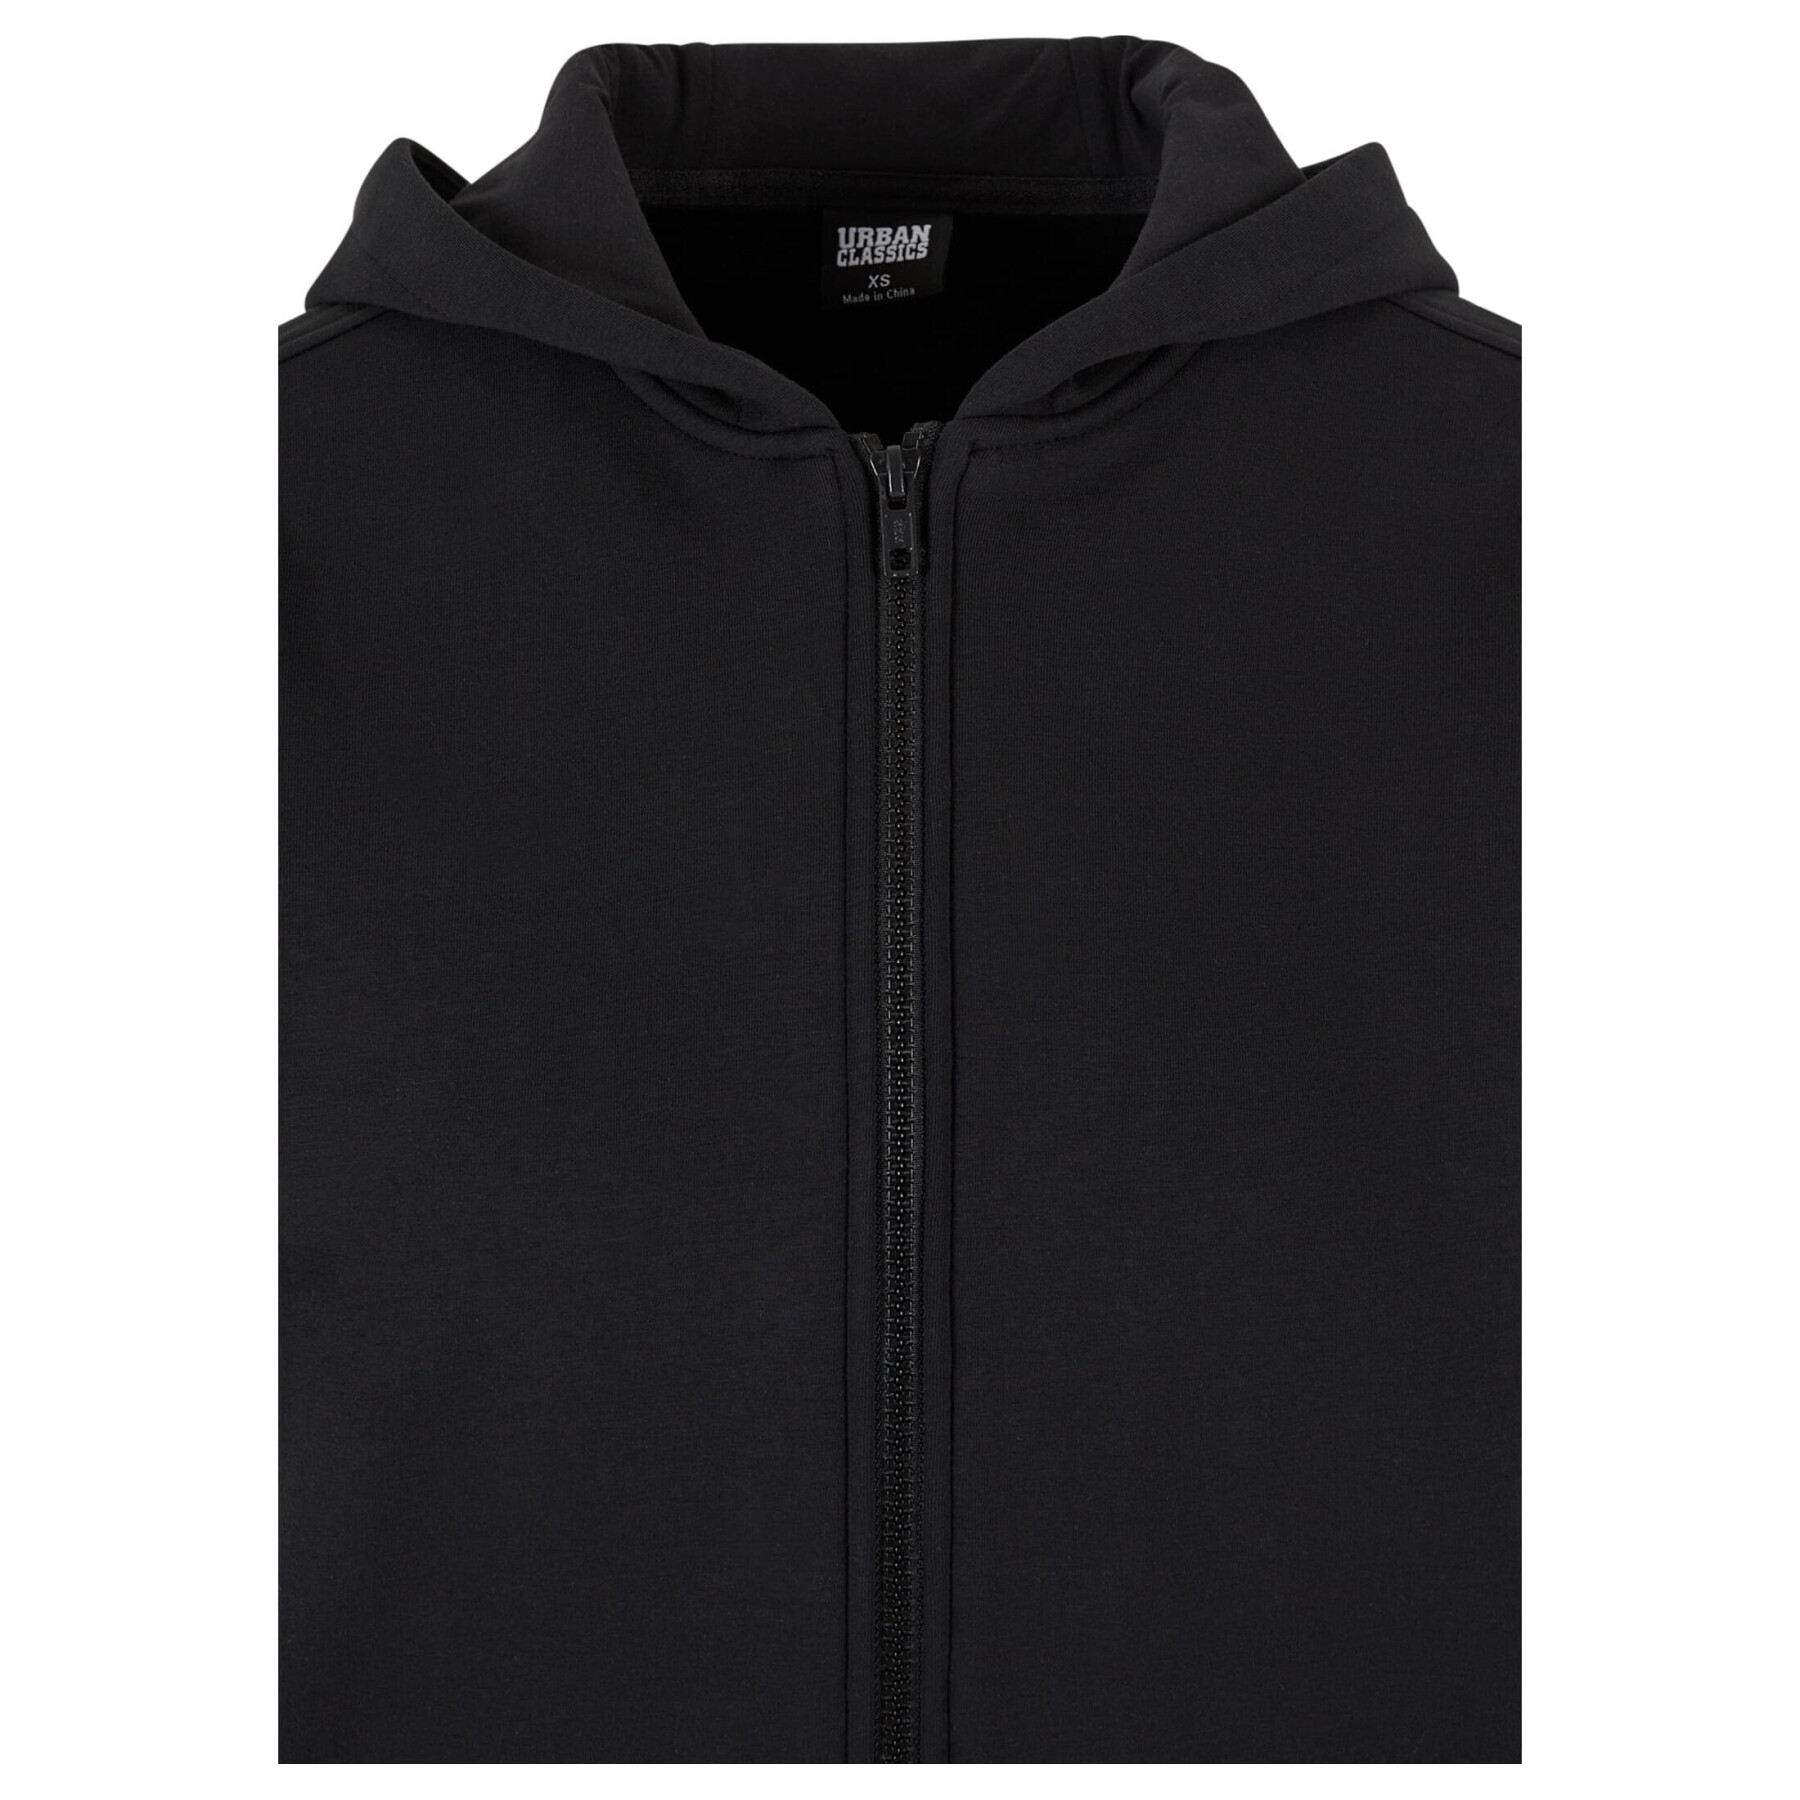 Women's oversized hooded zip sweatshirt Urban Classics Cozy